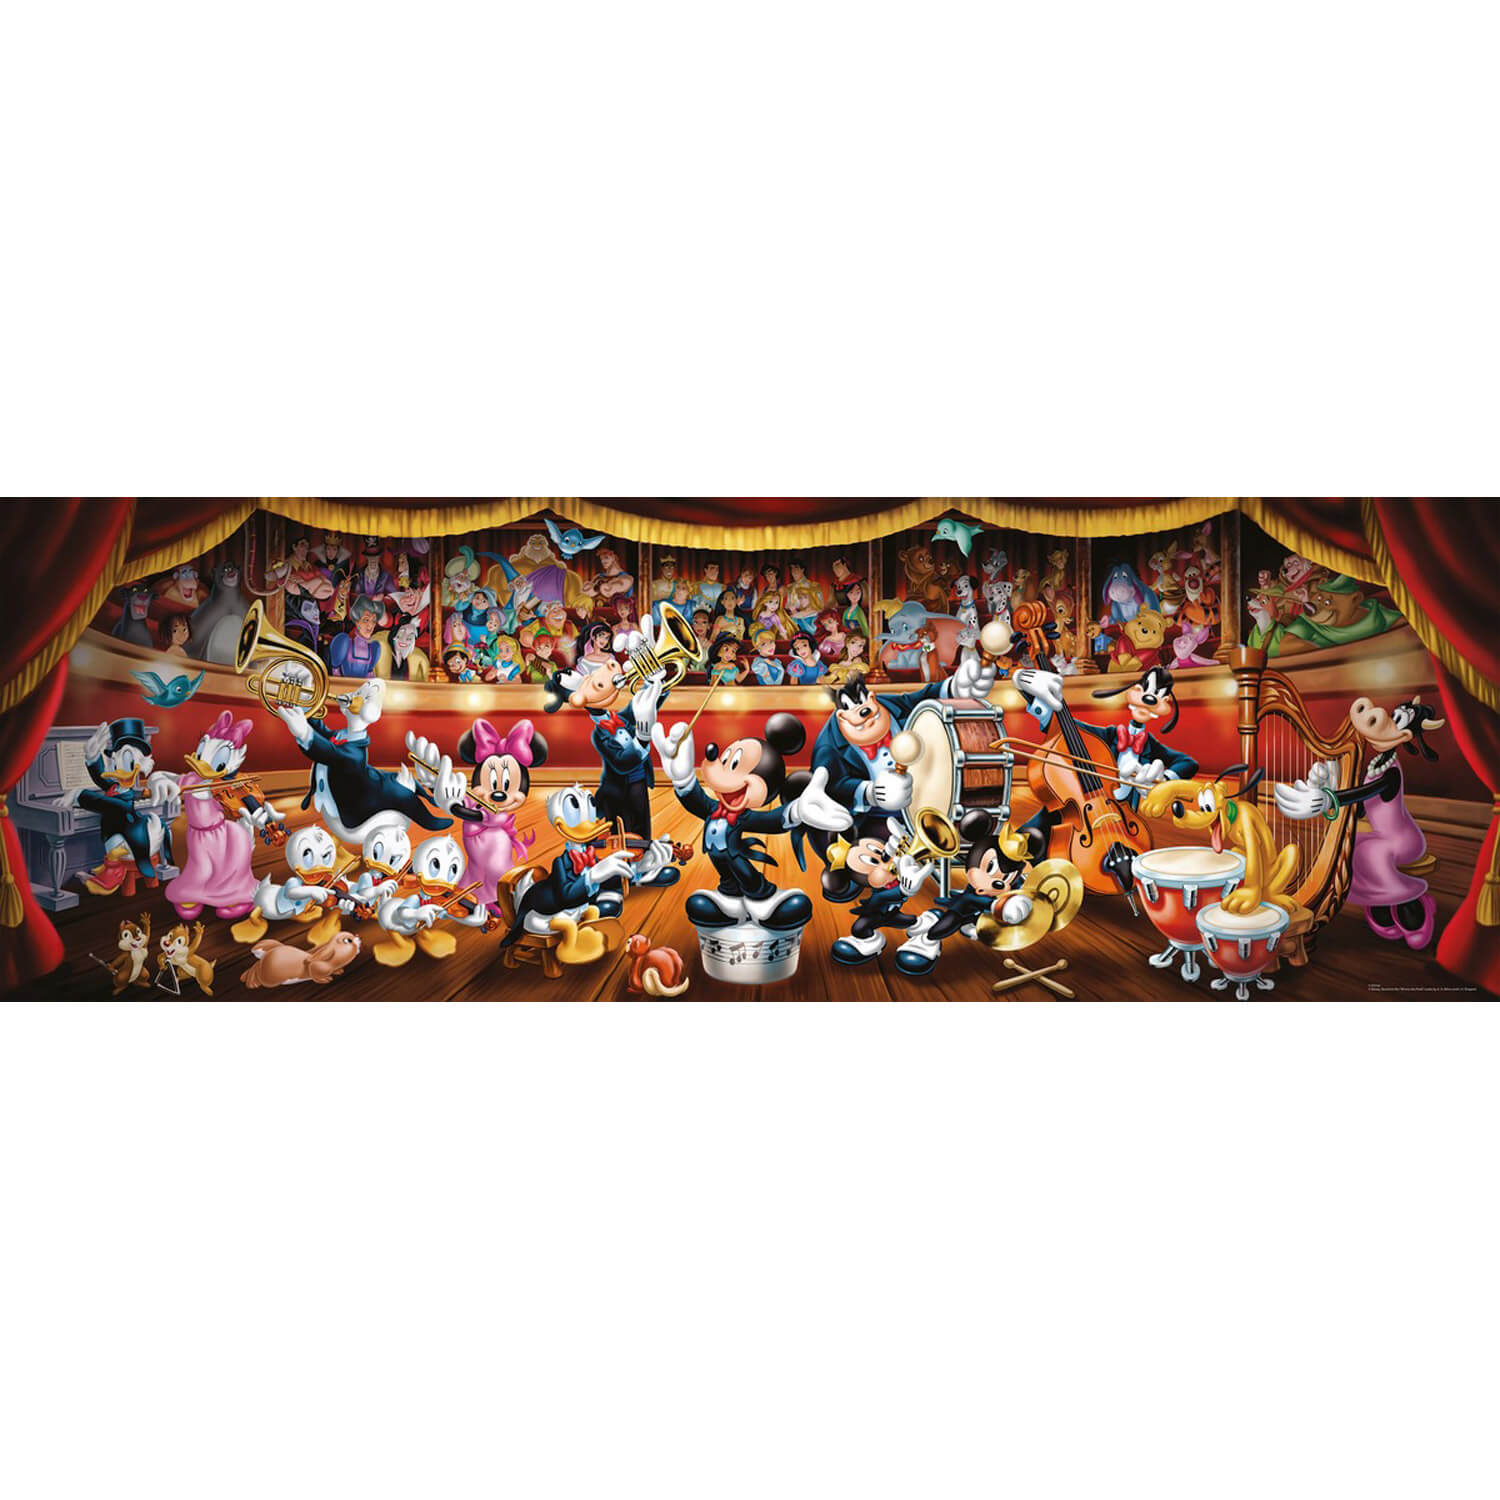 Puzzle 1000 p - Les plus beaux thèmes Disney, Puzzle adulte, Puzzle, Produits